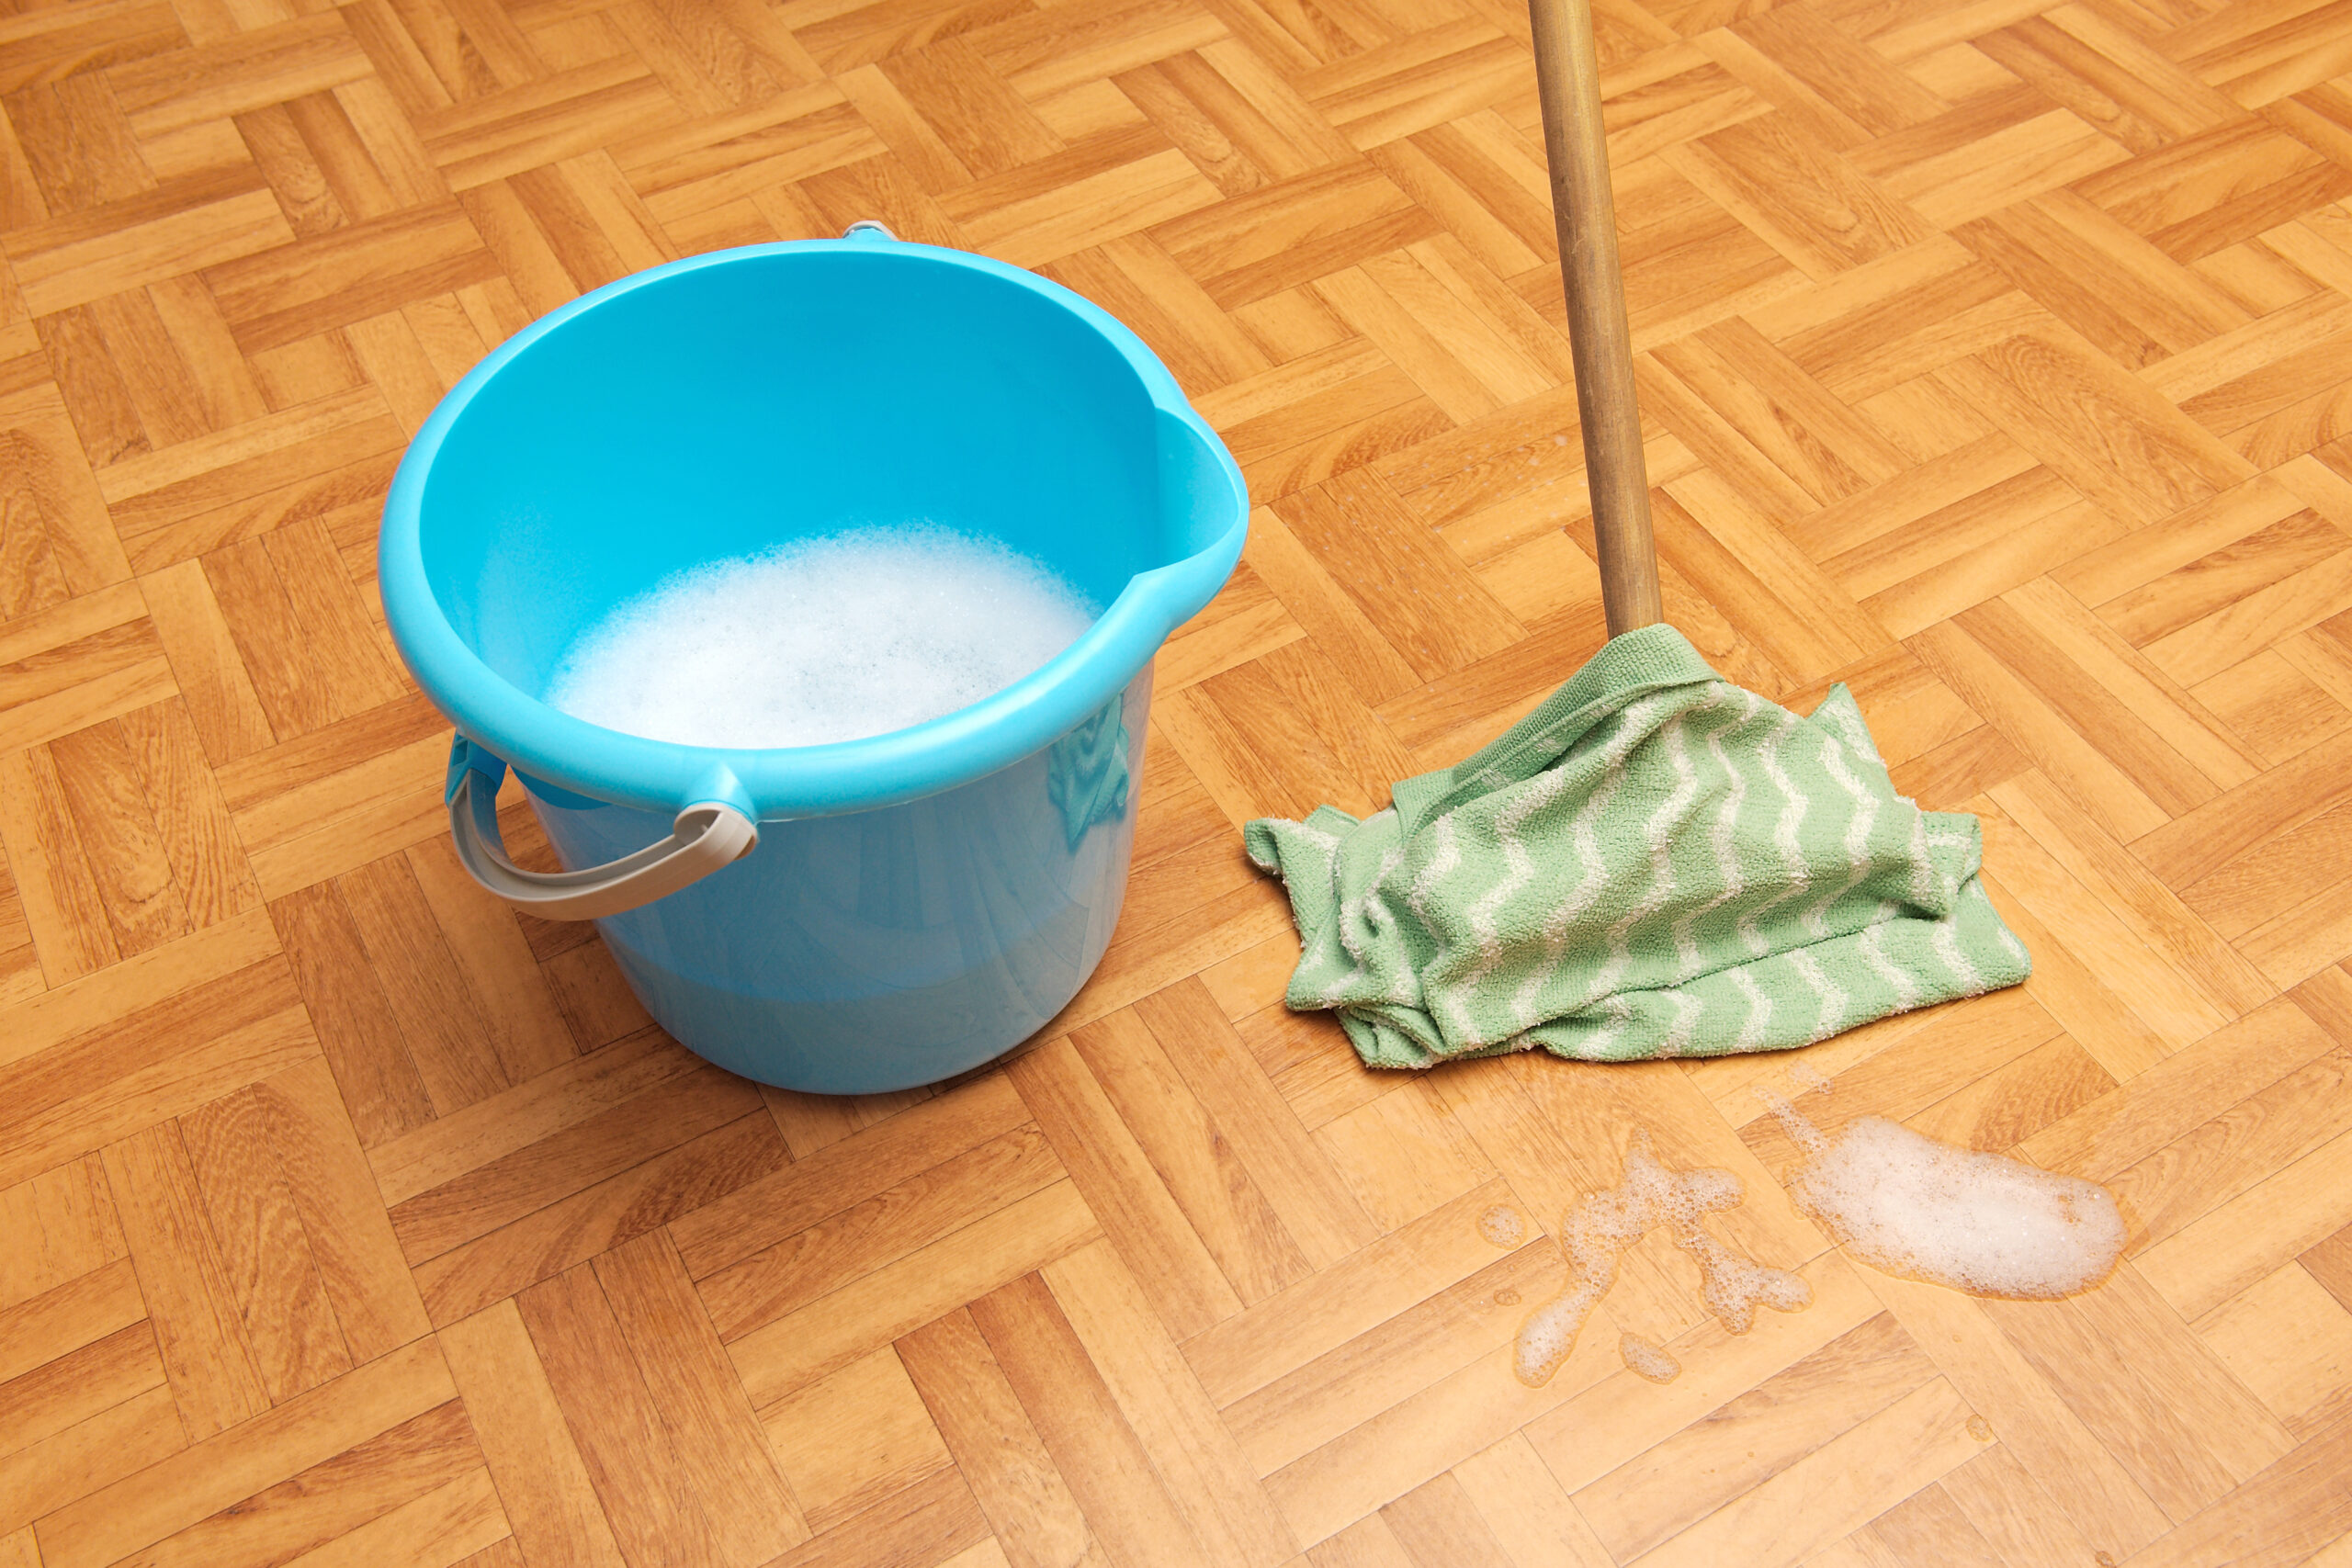 Trucco furbo ed economico per rimuovere lo sporco dai pavimenti in un lampo